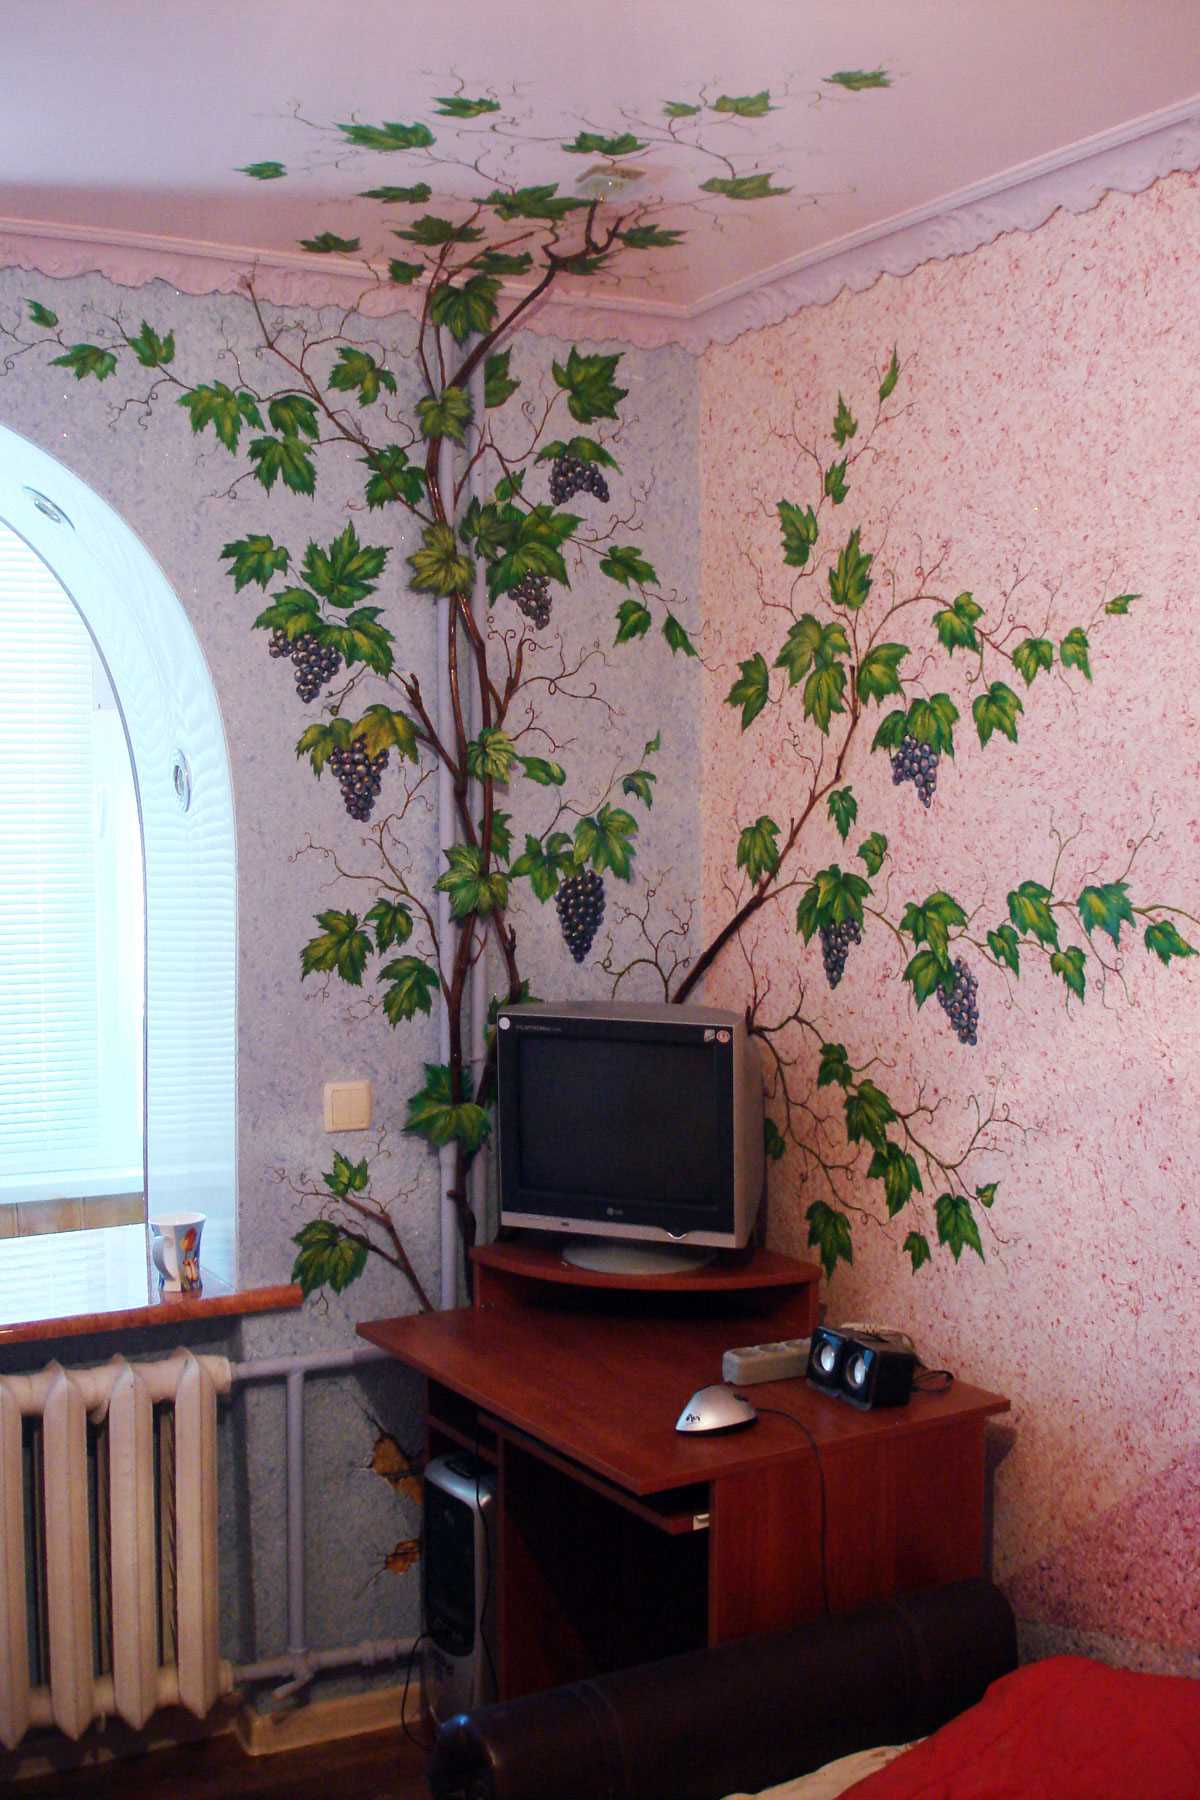 dzīvokļa skaista interjera variants ar dekoratīvu rakstu uz sienas